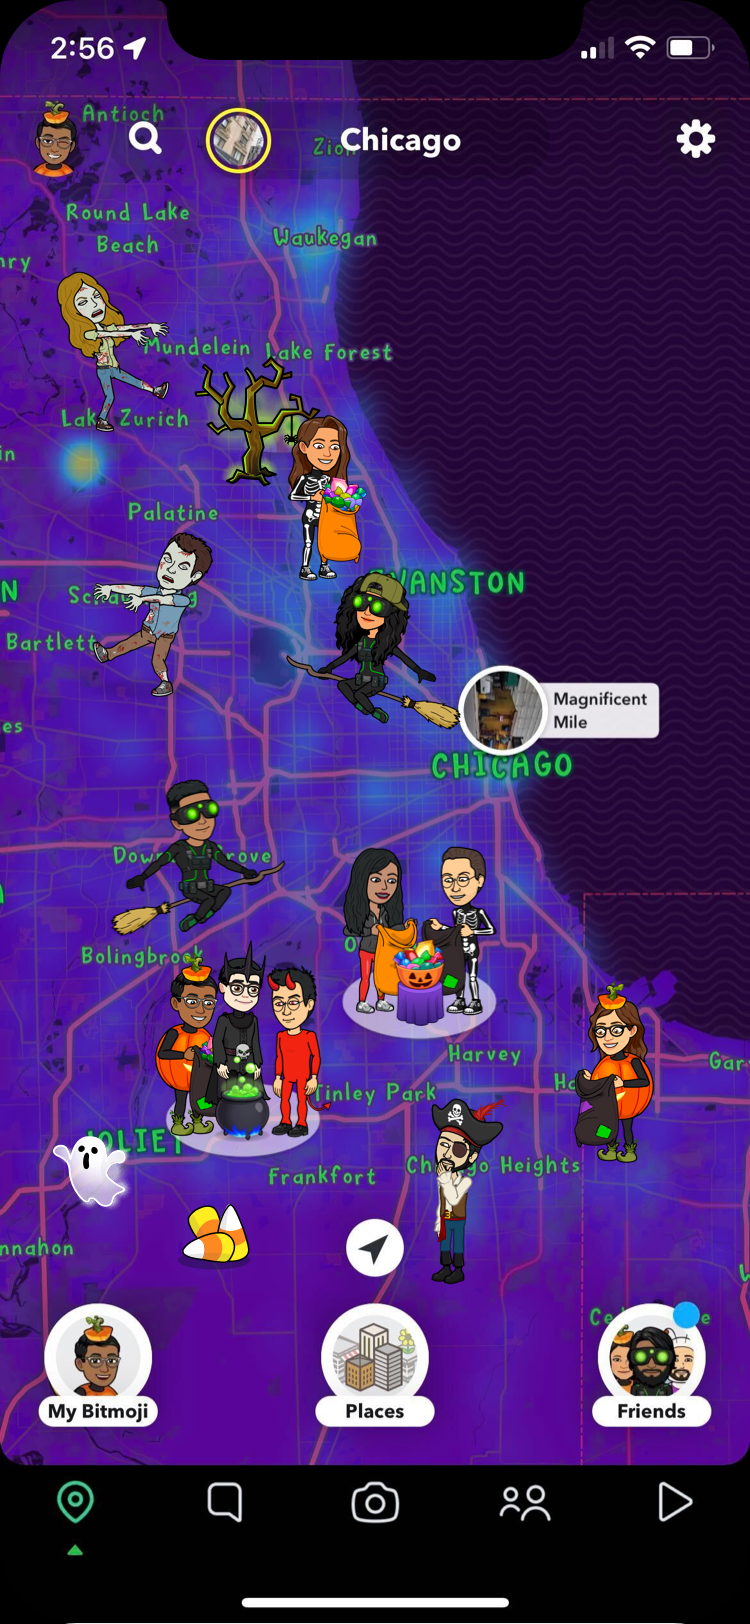 Novedades de Halloween en Snapchat: Disfraces para Bitmoji, filtros temáticos y más